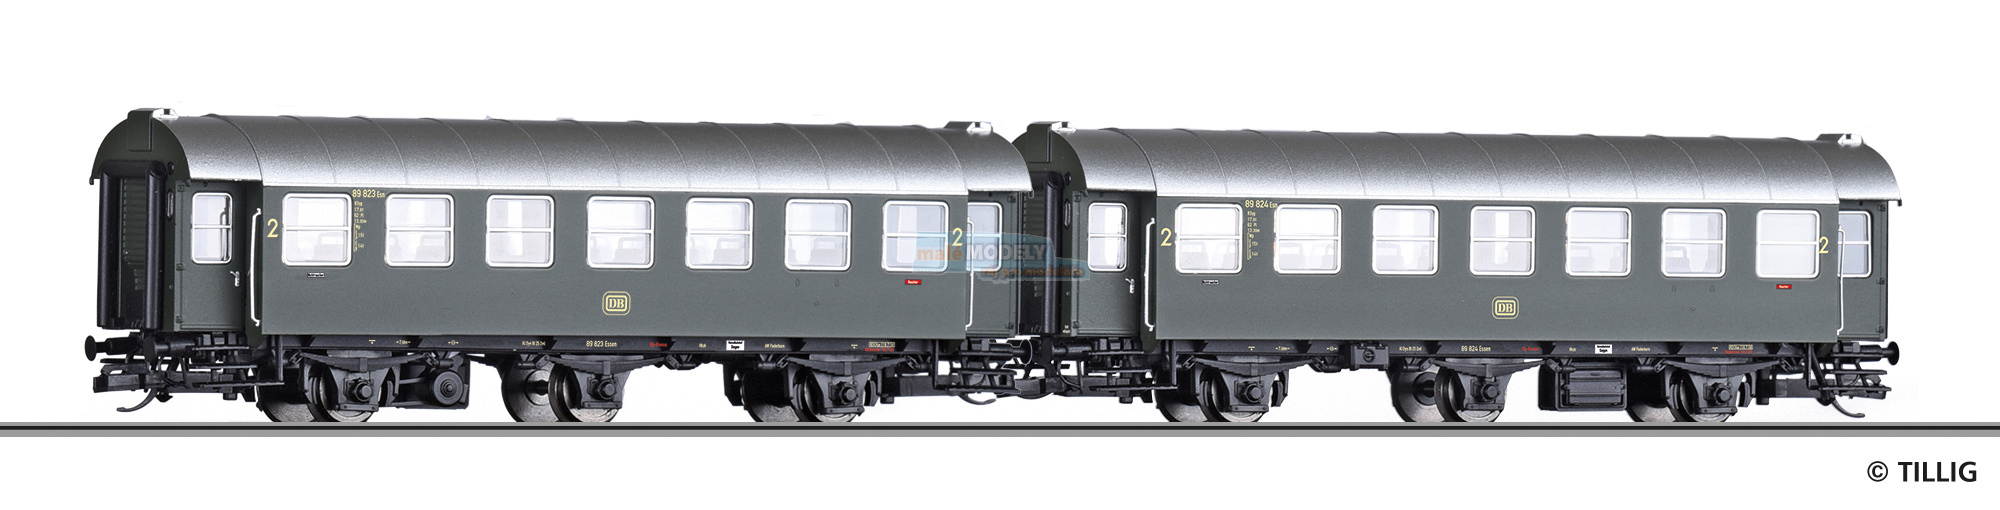 Reisezugwagen-Paar der DB, bestehend aus zwei 2. Klasse Reisezugwagen, Ep. III